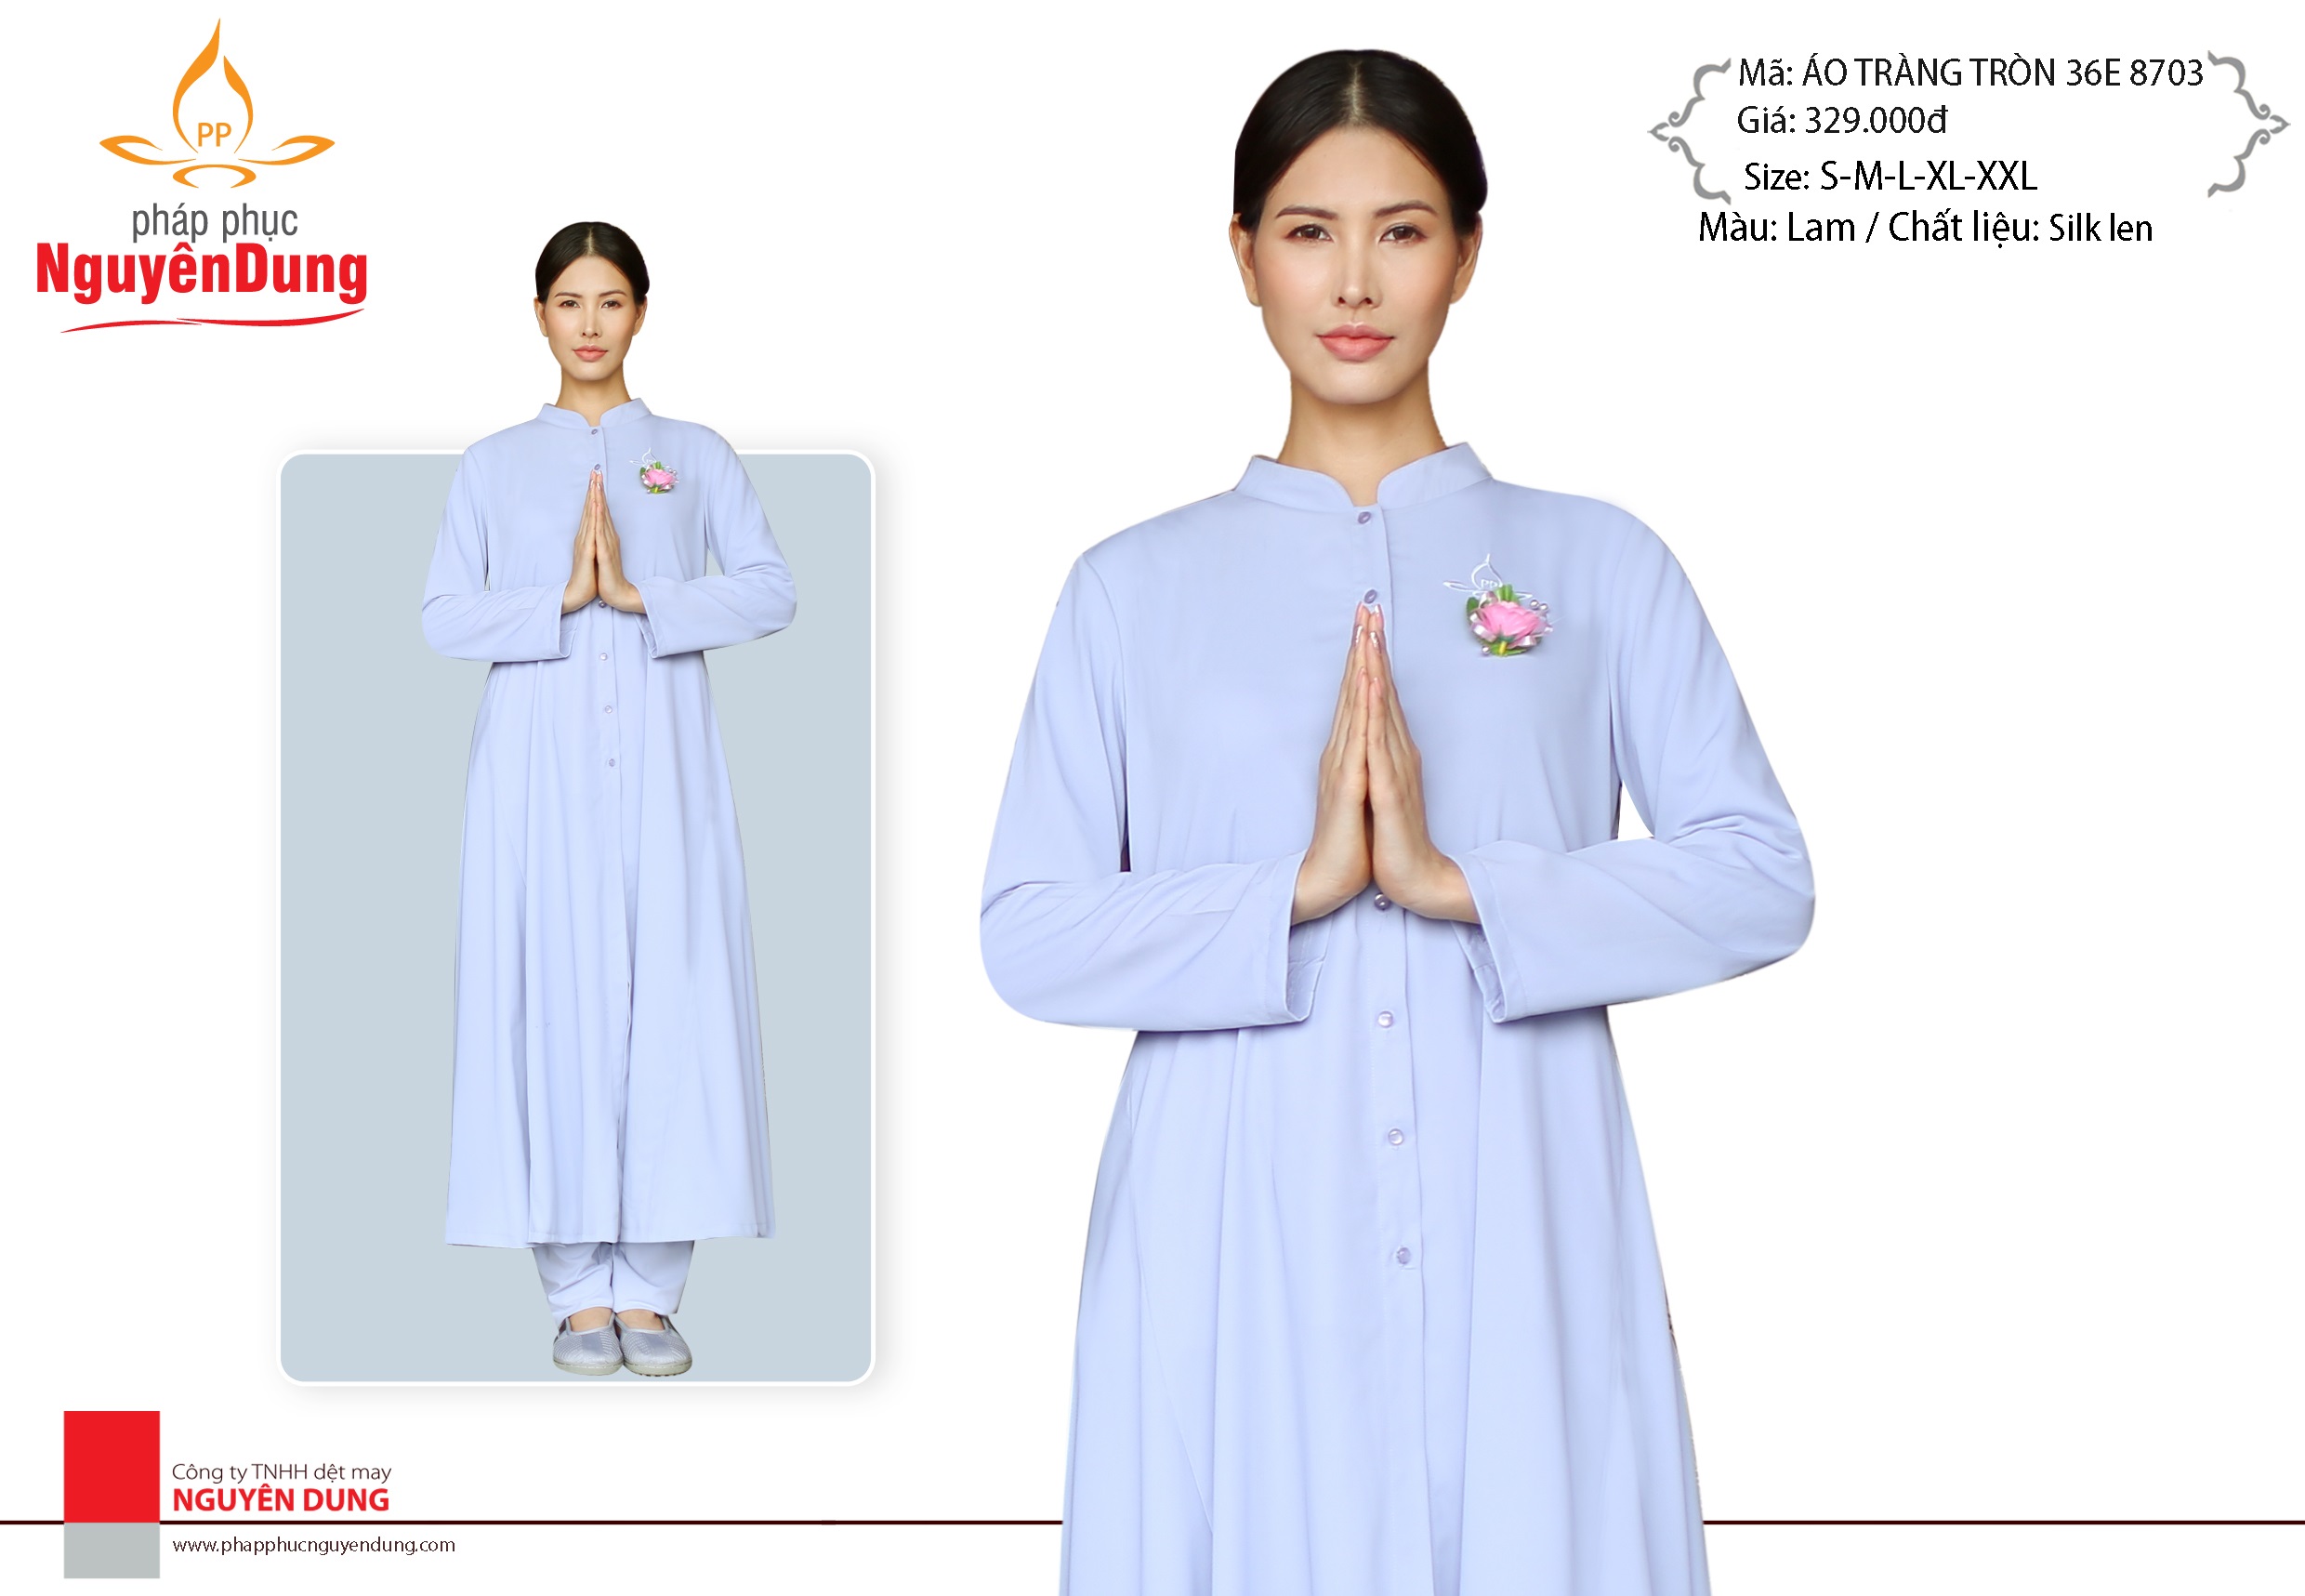 Áo tràng tròn Pháp phục Nguyên Dung cho Nữ, silk len 36E-8703